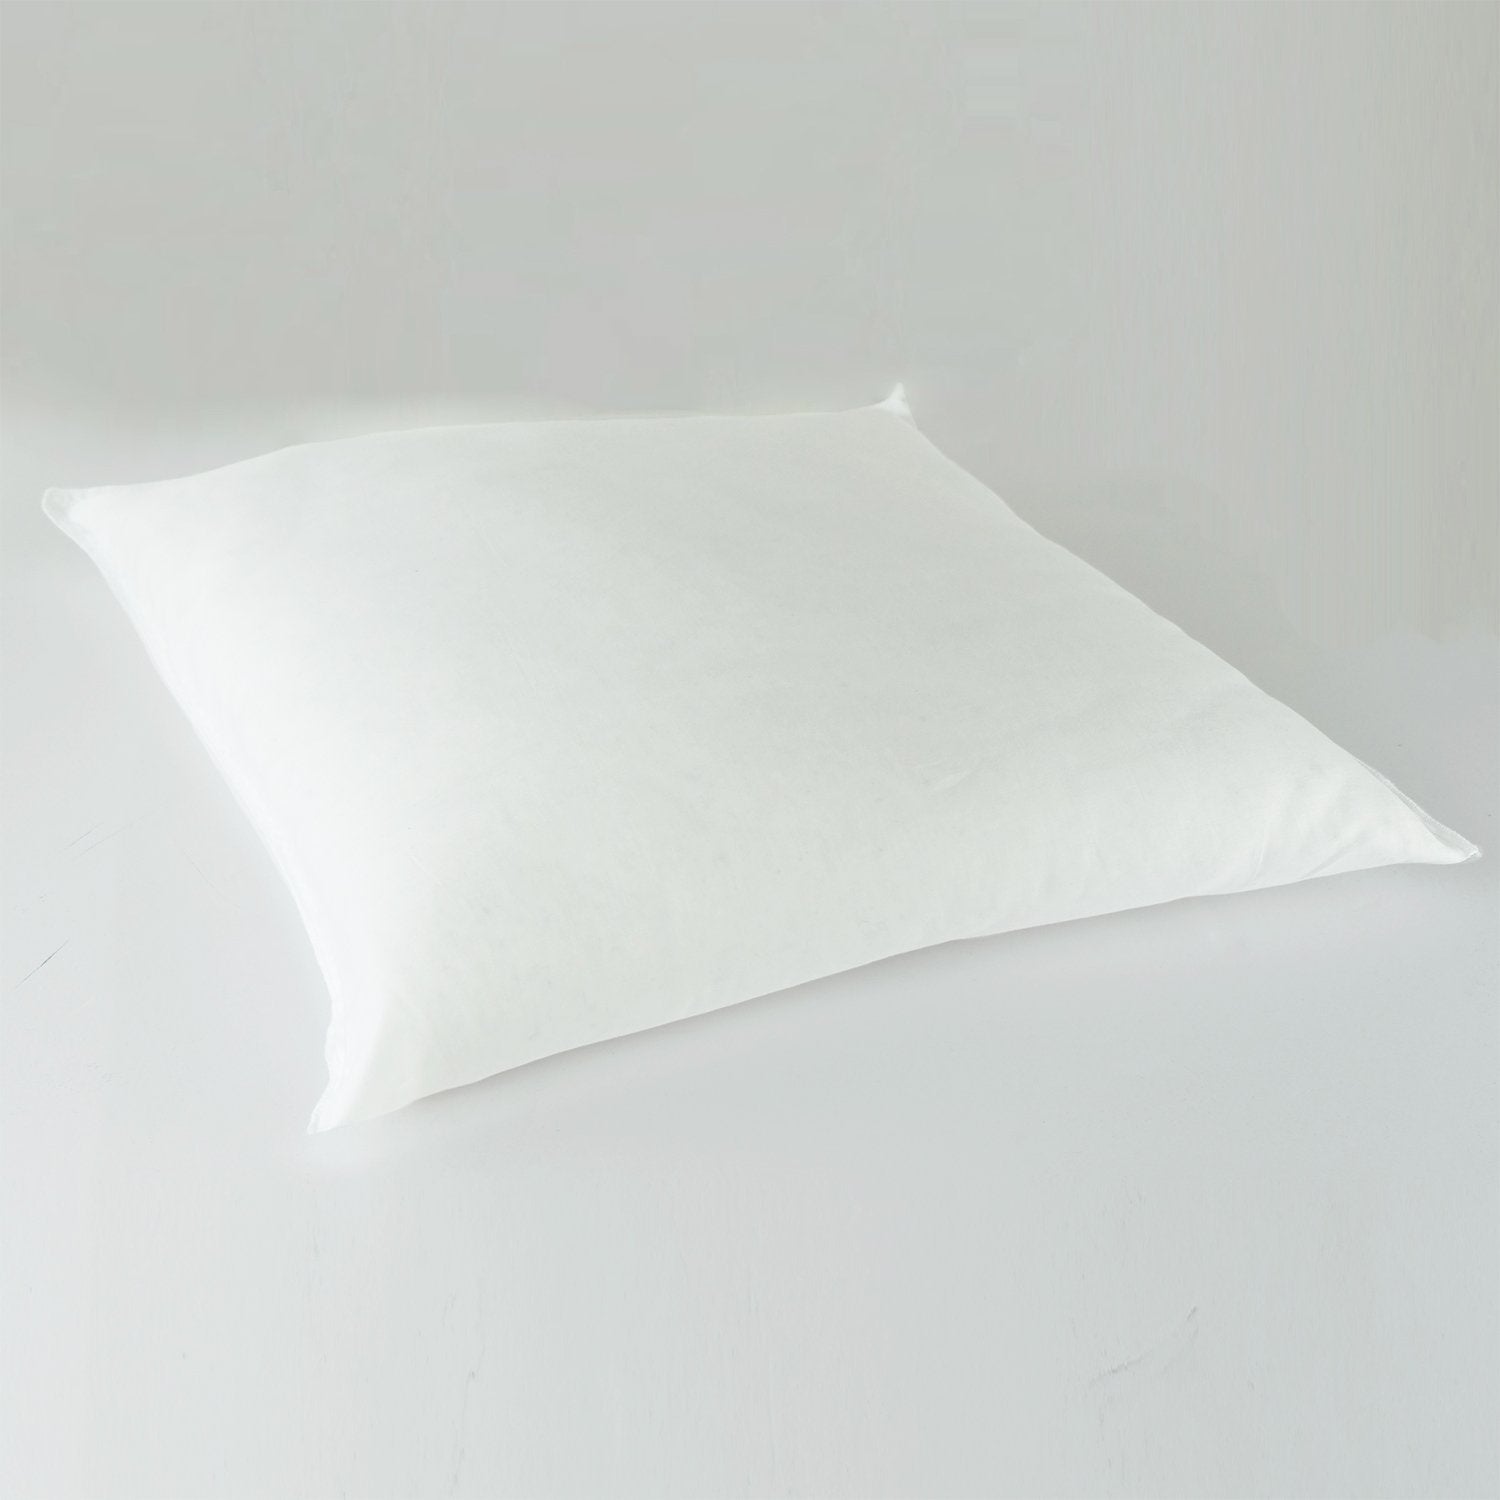 J-Life Patchi Navy Zabuton Floor Pillow_Pillows & Shams_Zabuton Floor Pillows_100% Cotton_1